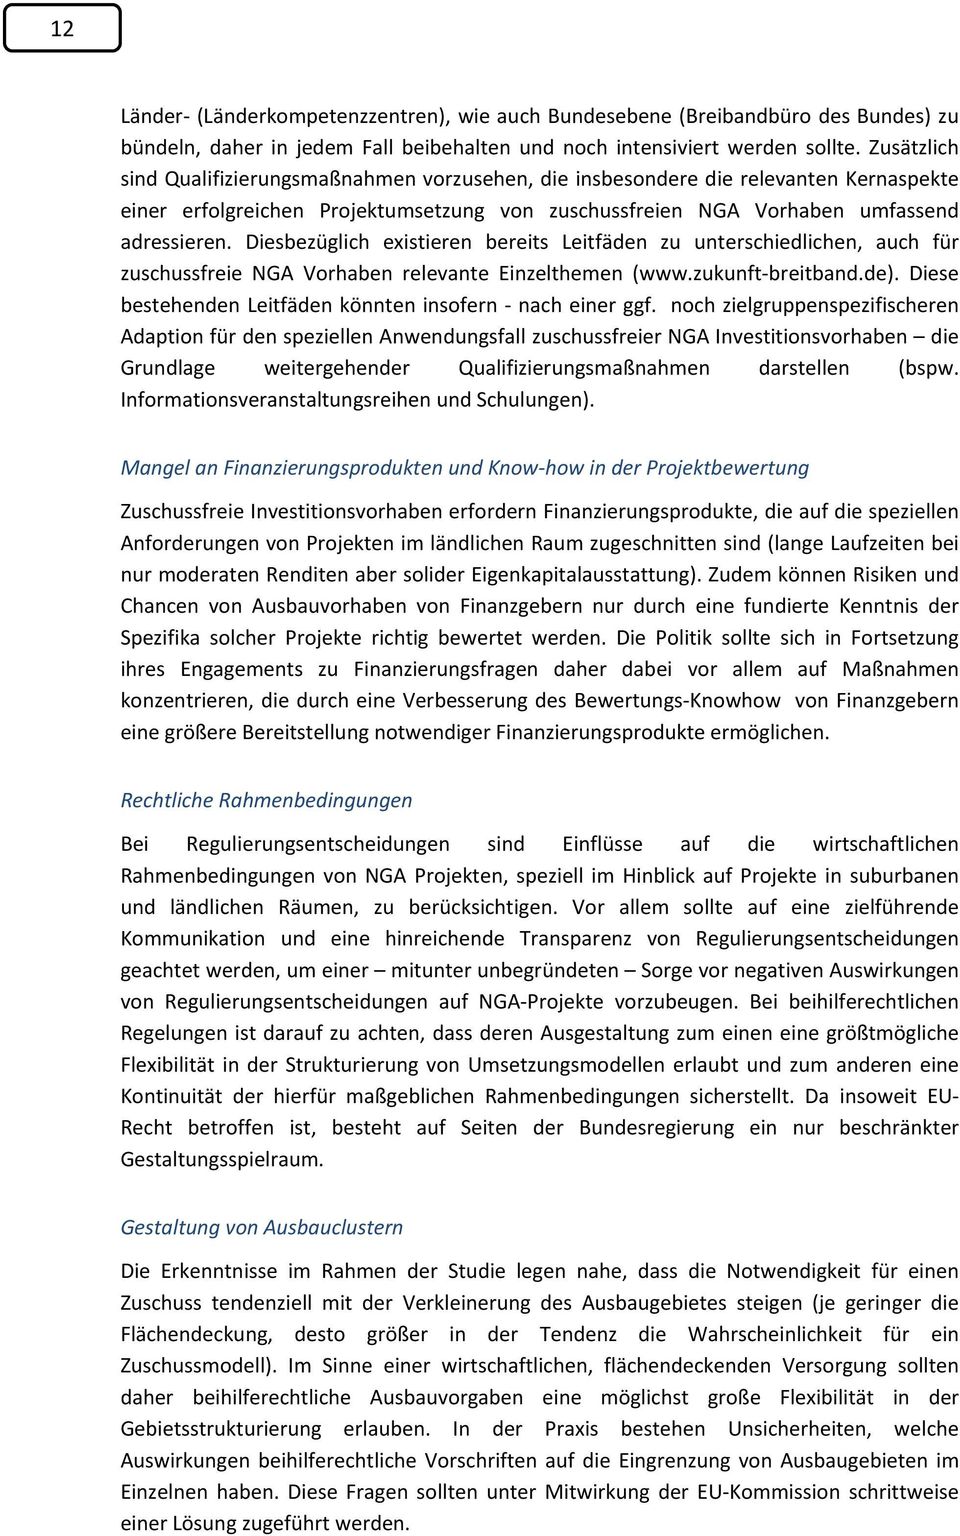 Diesbezüglich existieren bereits Leitfäden zu unterschiedlichen, auch für zuschussfreie NGA Vorhaben relevante Einzelthemen (www.zukunft-breitband.de).